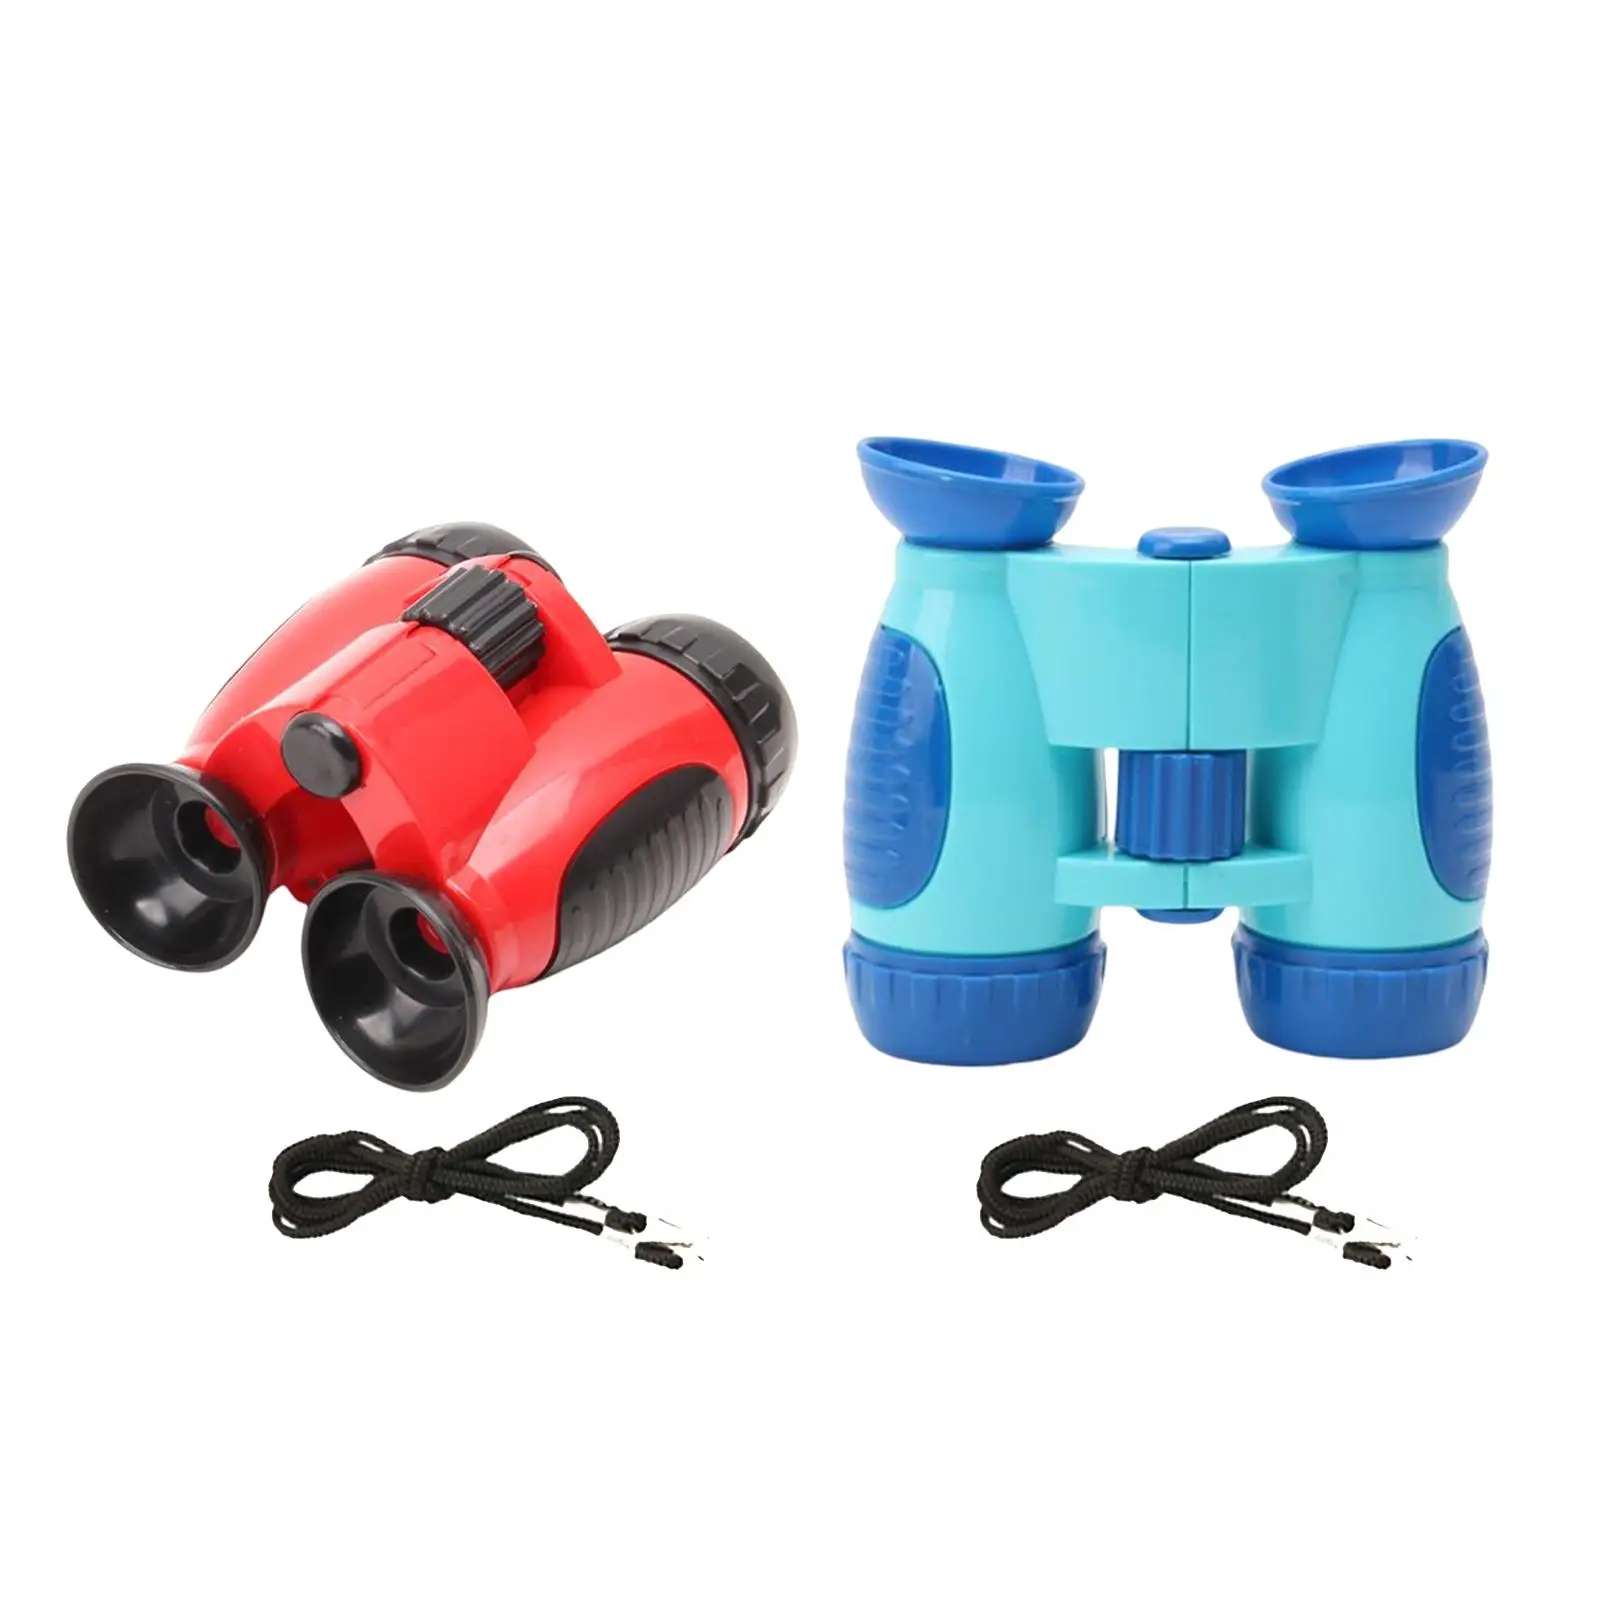 Children Telescope Portable Sciences Toy Binoculars Waterproof HD Children Binoculars for Hiking Camping Outdoor Children Boys